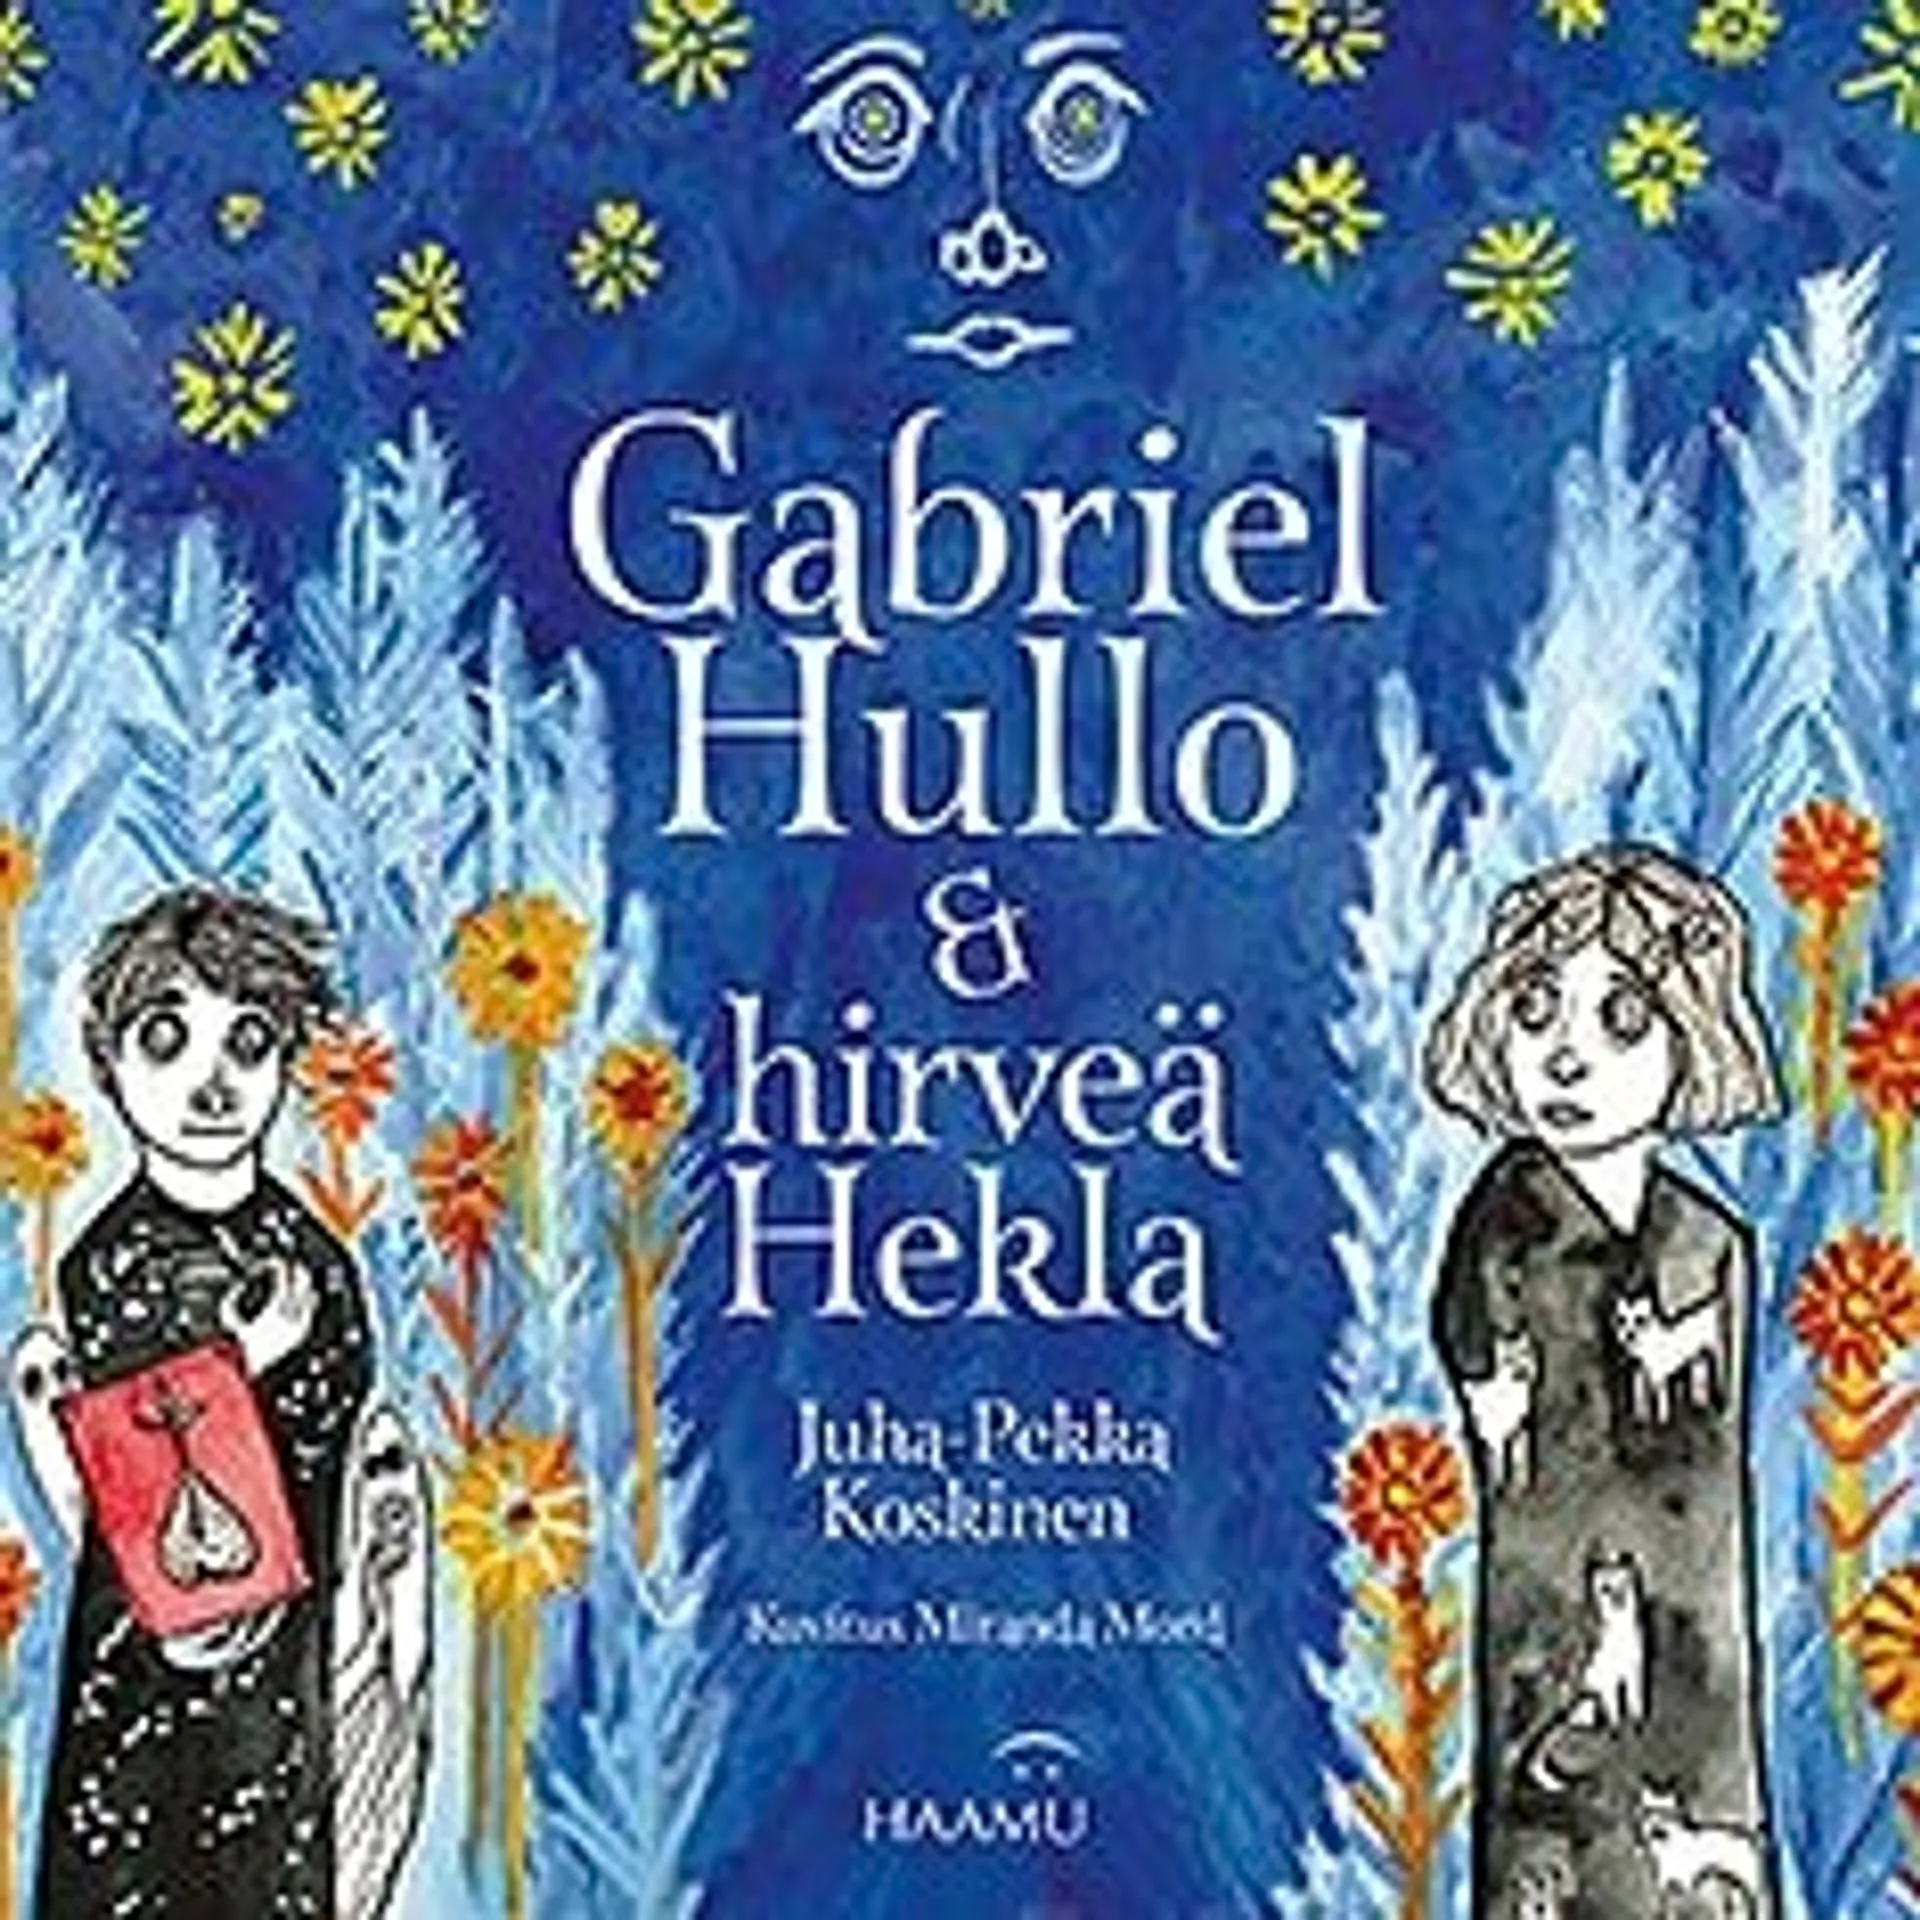 Koskinen, Gabriel Hullo & hirveä Hekla